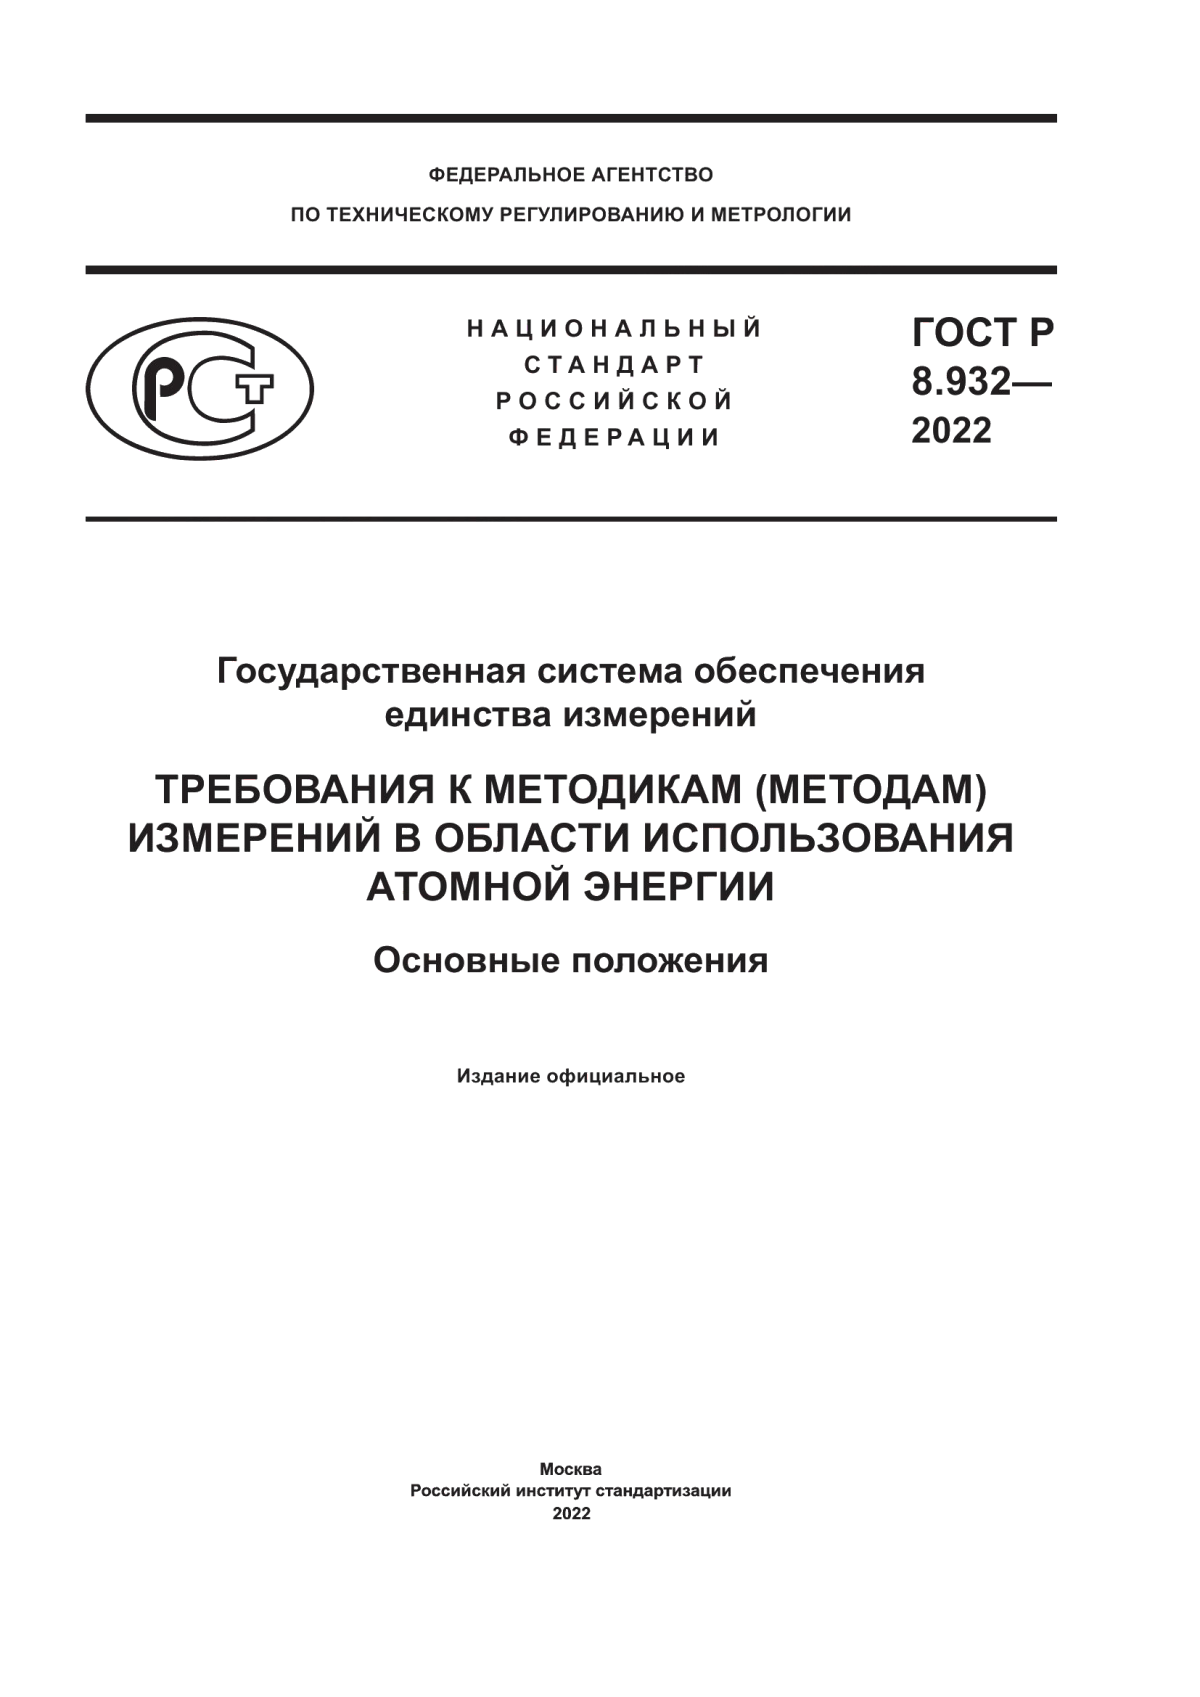 ГОСТ Р 8.932-2022 Государственная система обеспечения единства измерений. Требования к методикам (методам) измерений в области использования атомной энергии. Основные положения